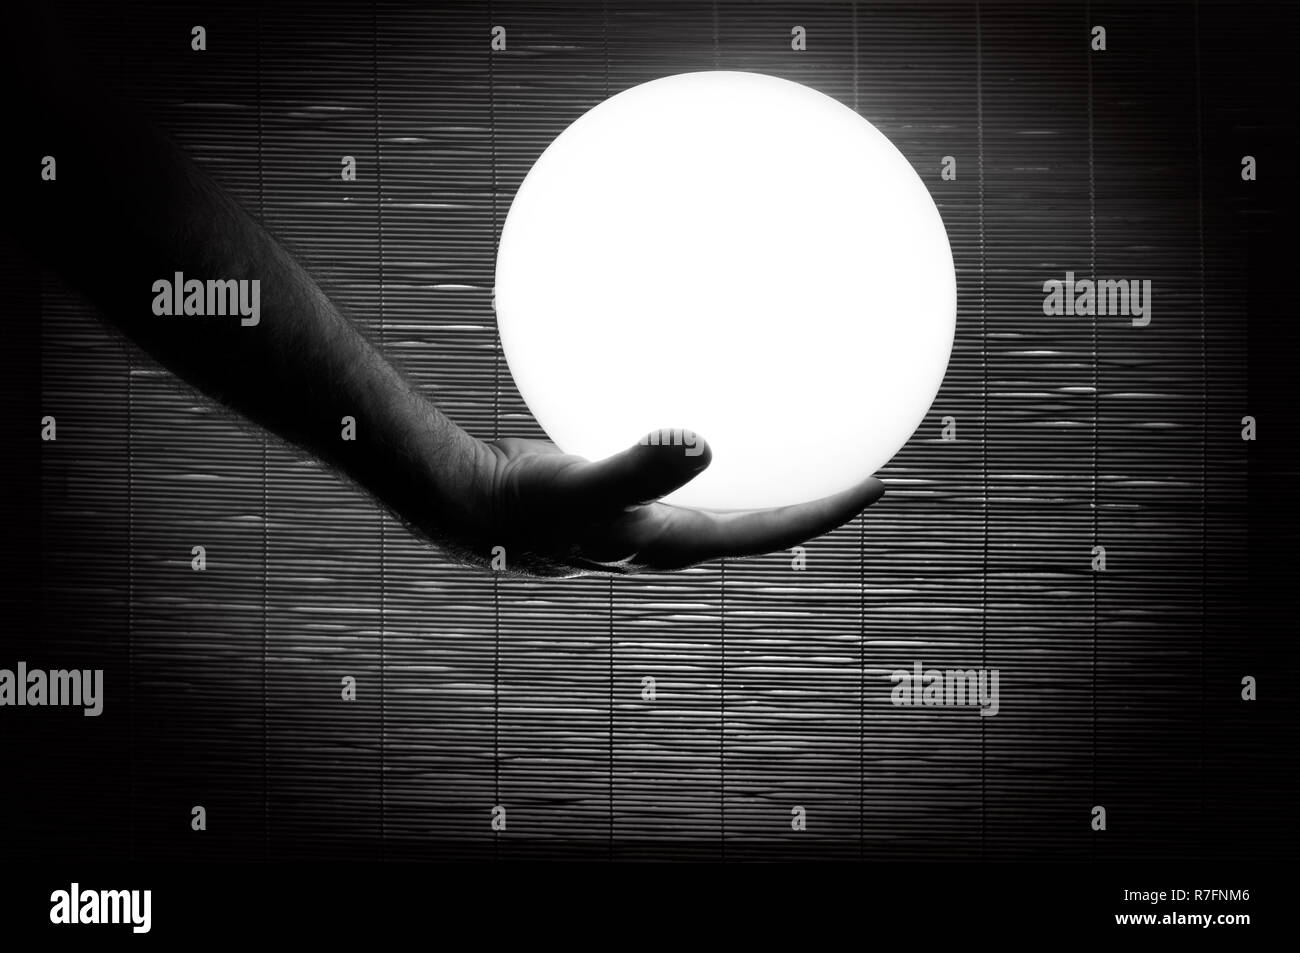 La main de l'homme tenant une sphère blanche fond bambou tourné en noir et blanc Banque D'Images